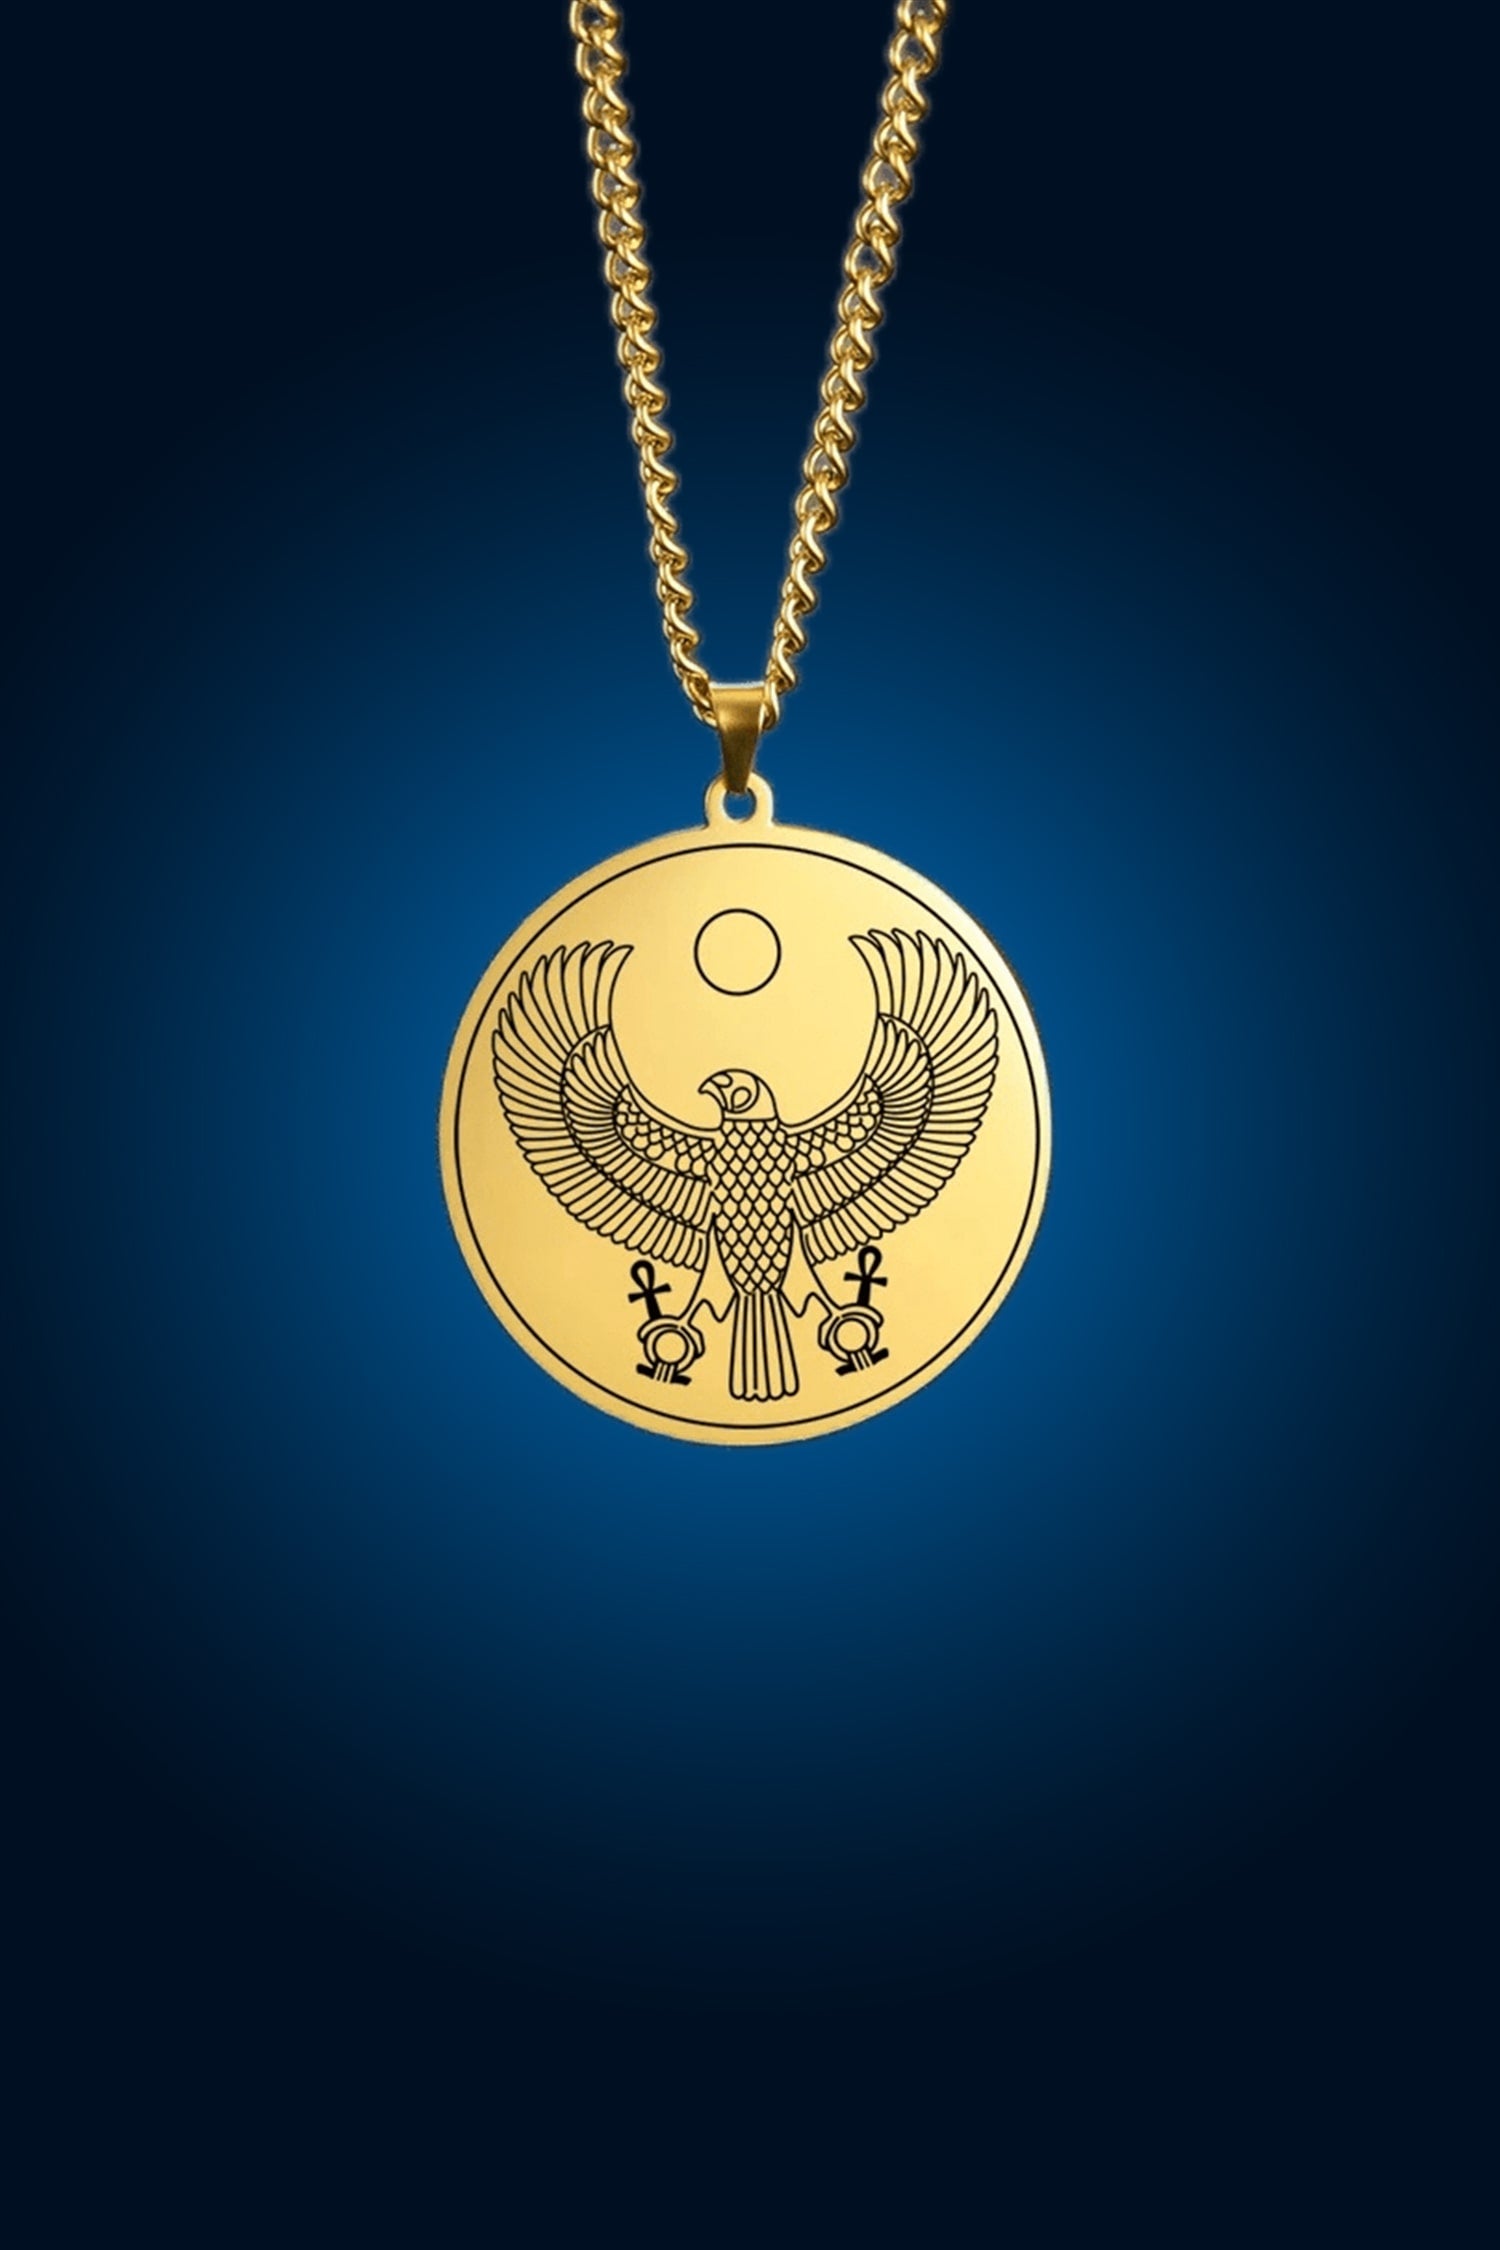 hrous falcon round pendant necklace protection egypt god spiritual jewlery